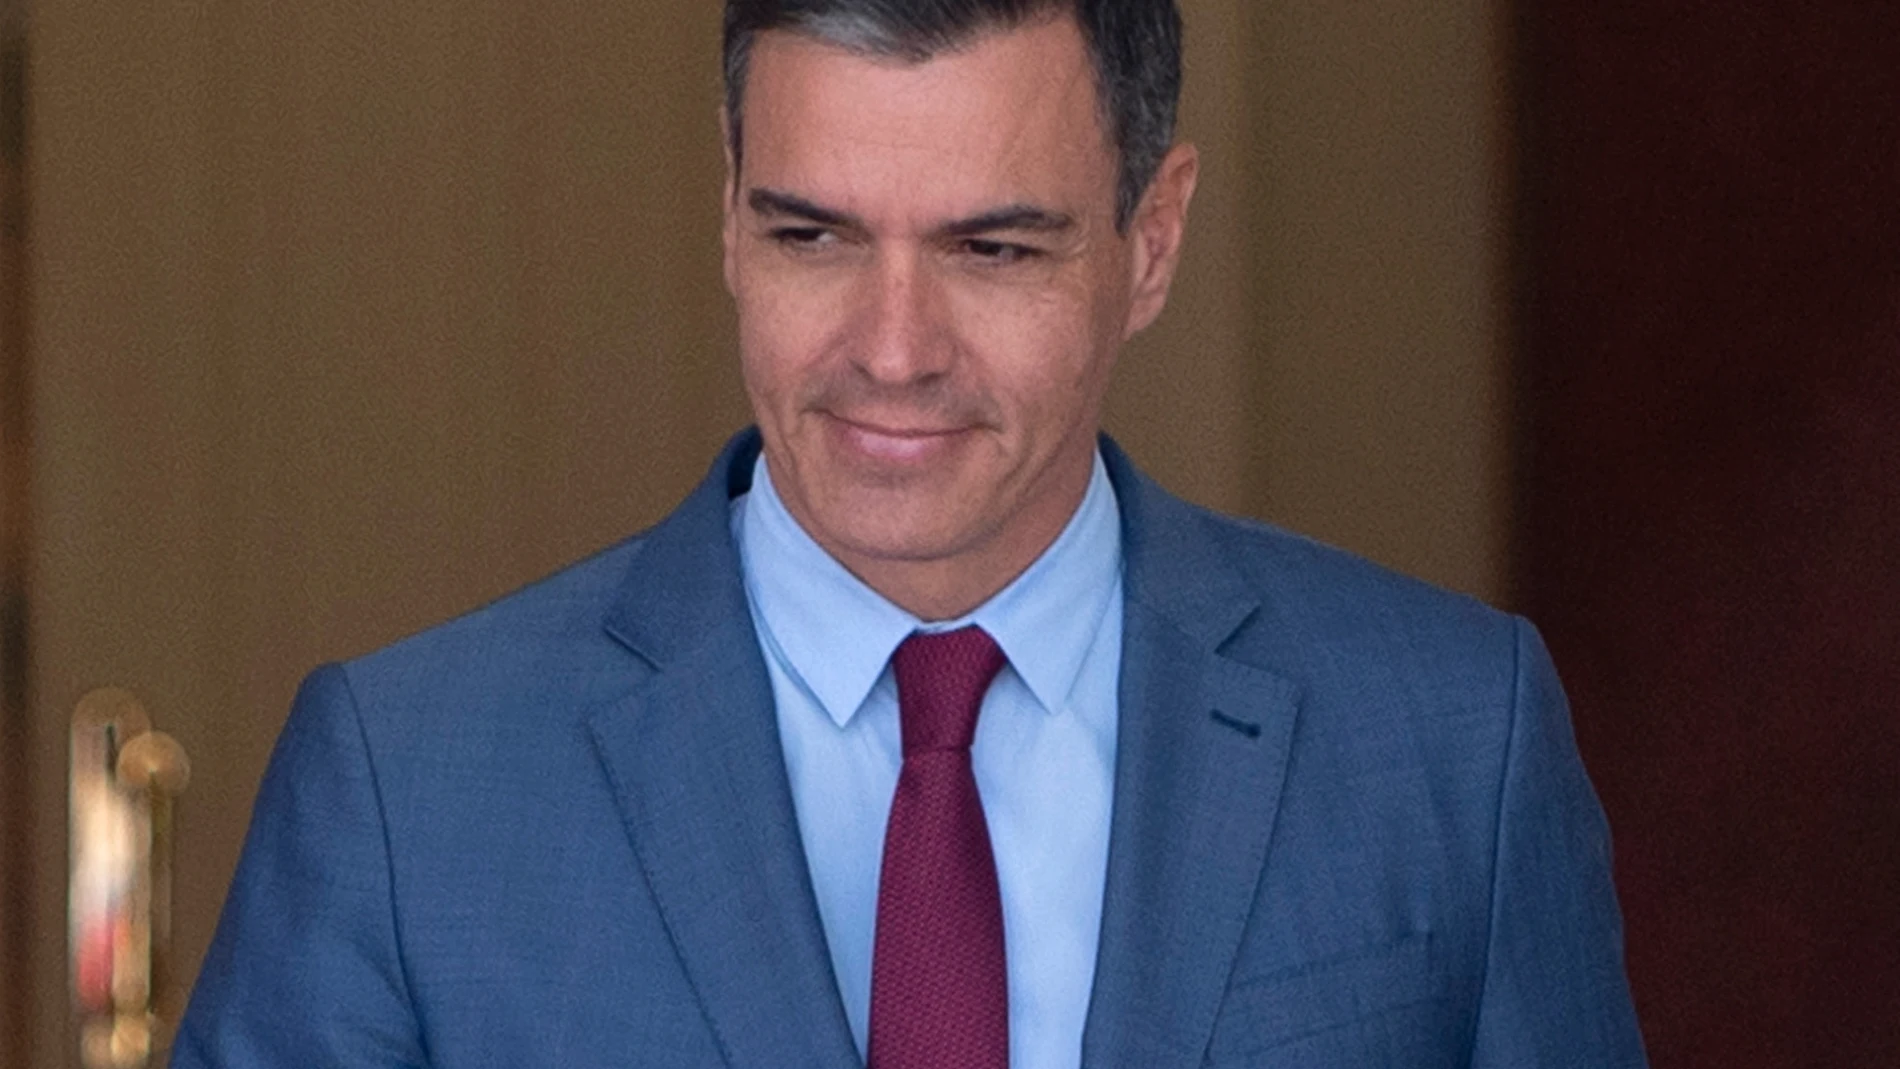 El presidente del Gobierno, Pedro Sánchez, en el Palacio de la Moncloa